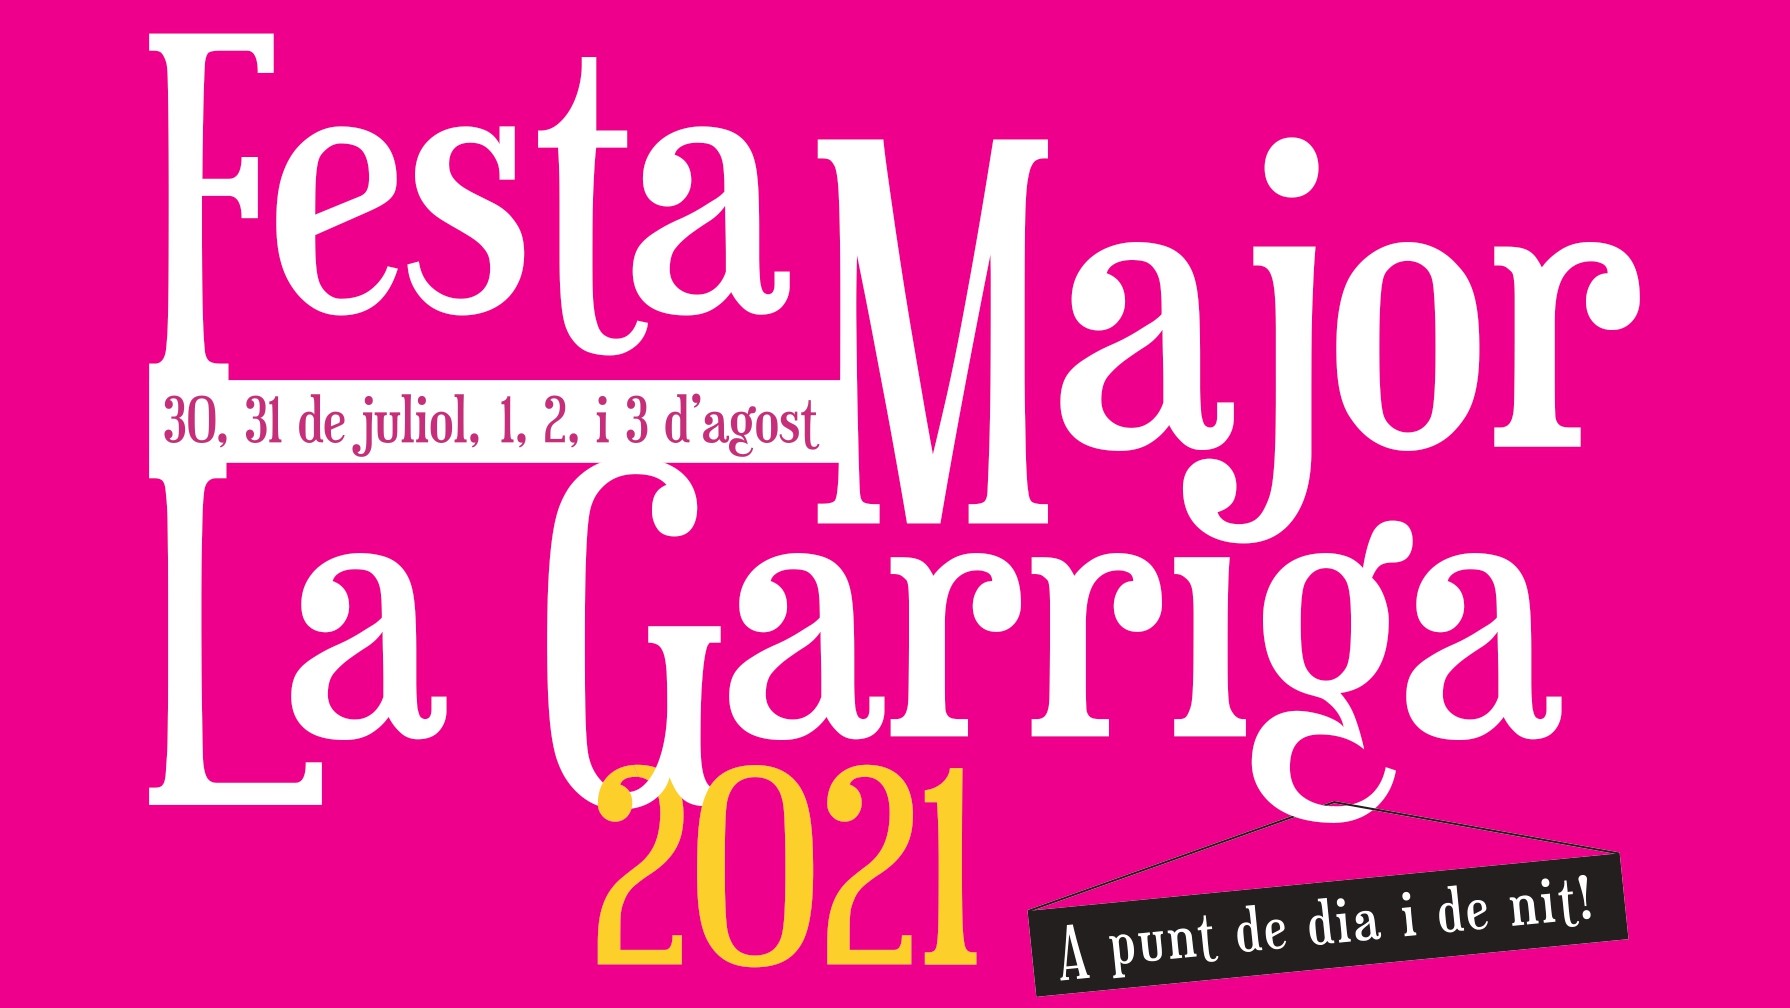 Una Festa Major pensada per a la gent de la Garriga